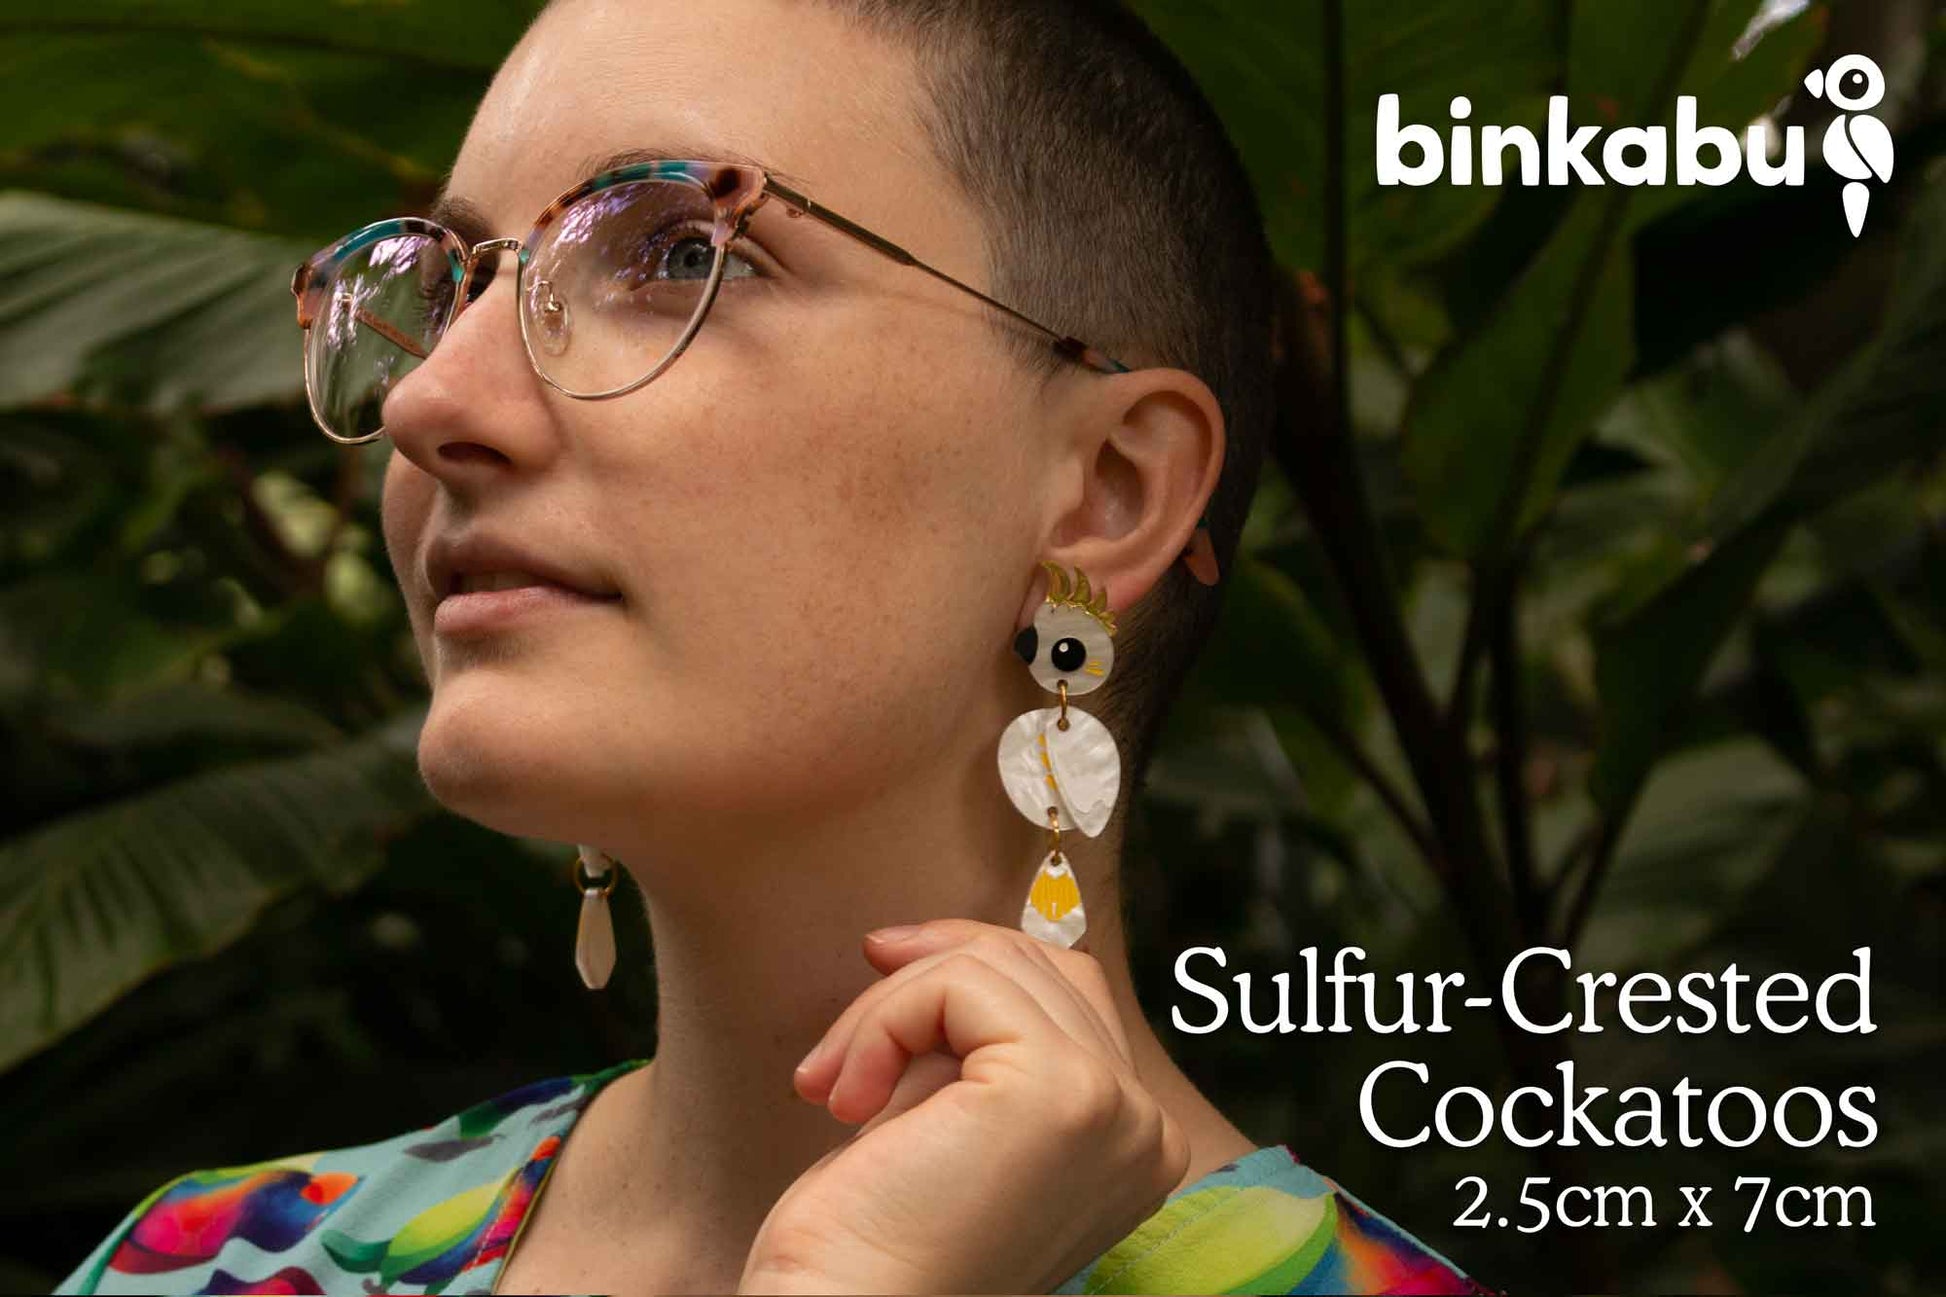 Acrylic sulfur-crested cockatoo dangle earrings handmade